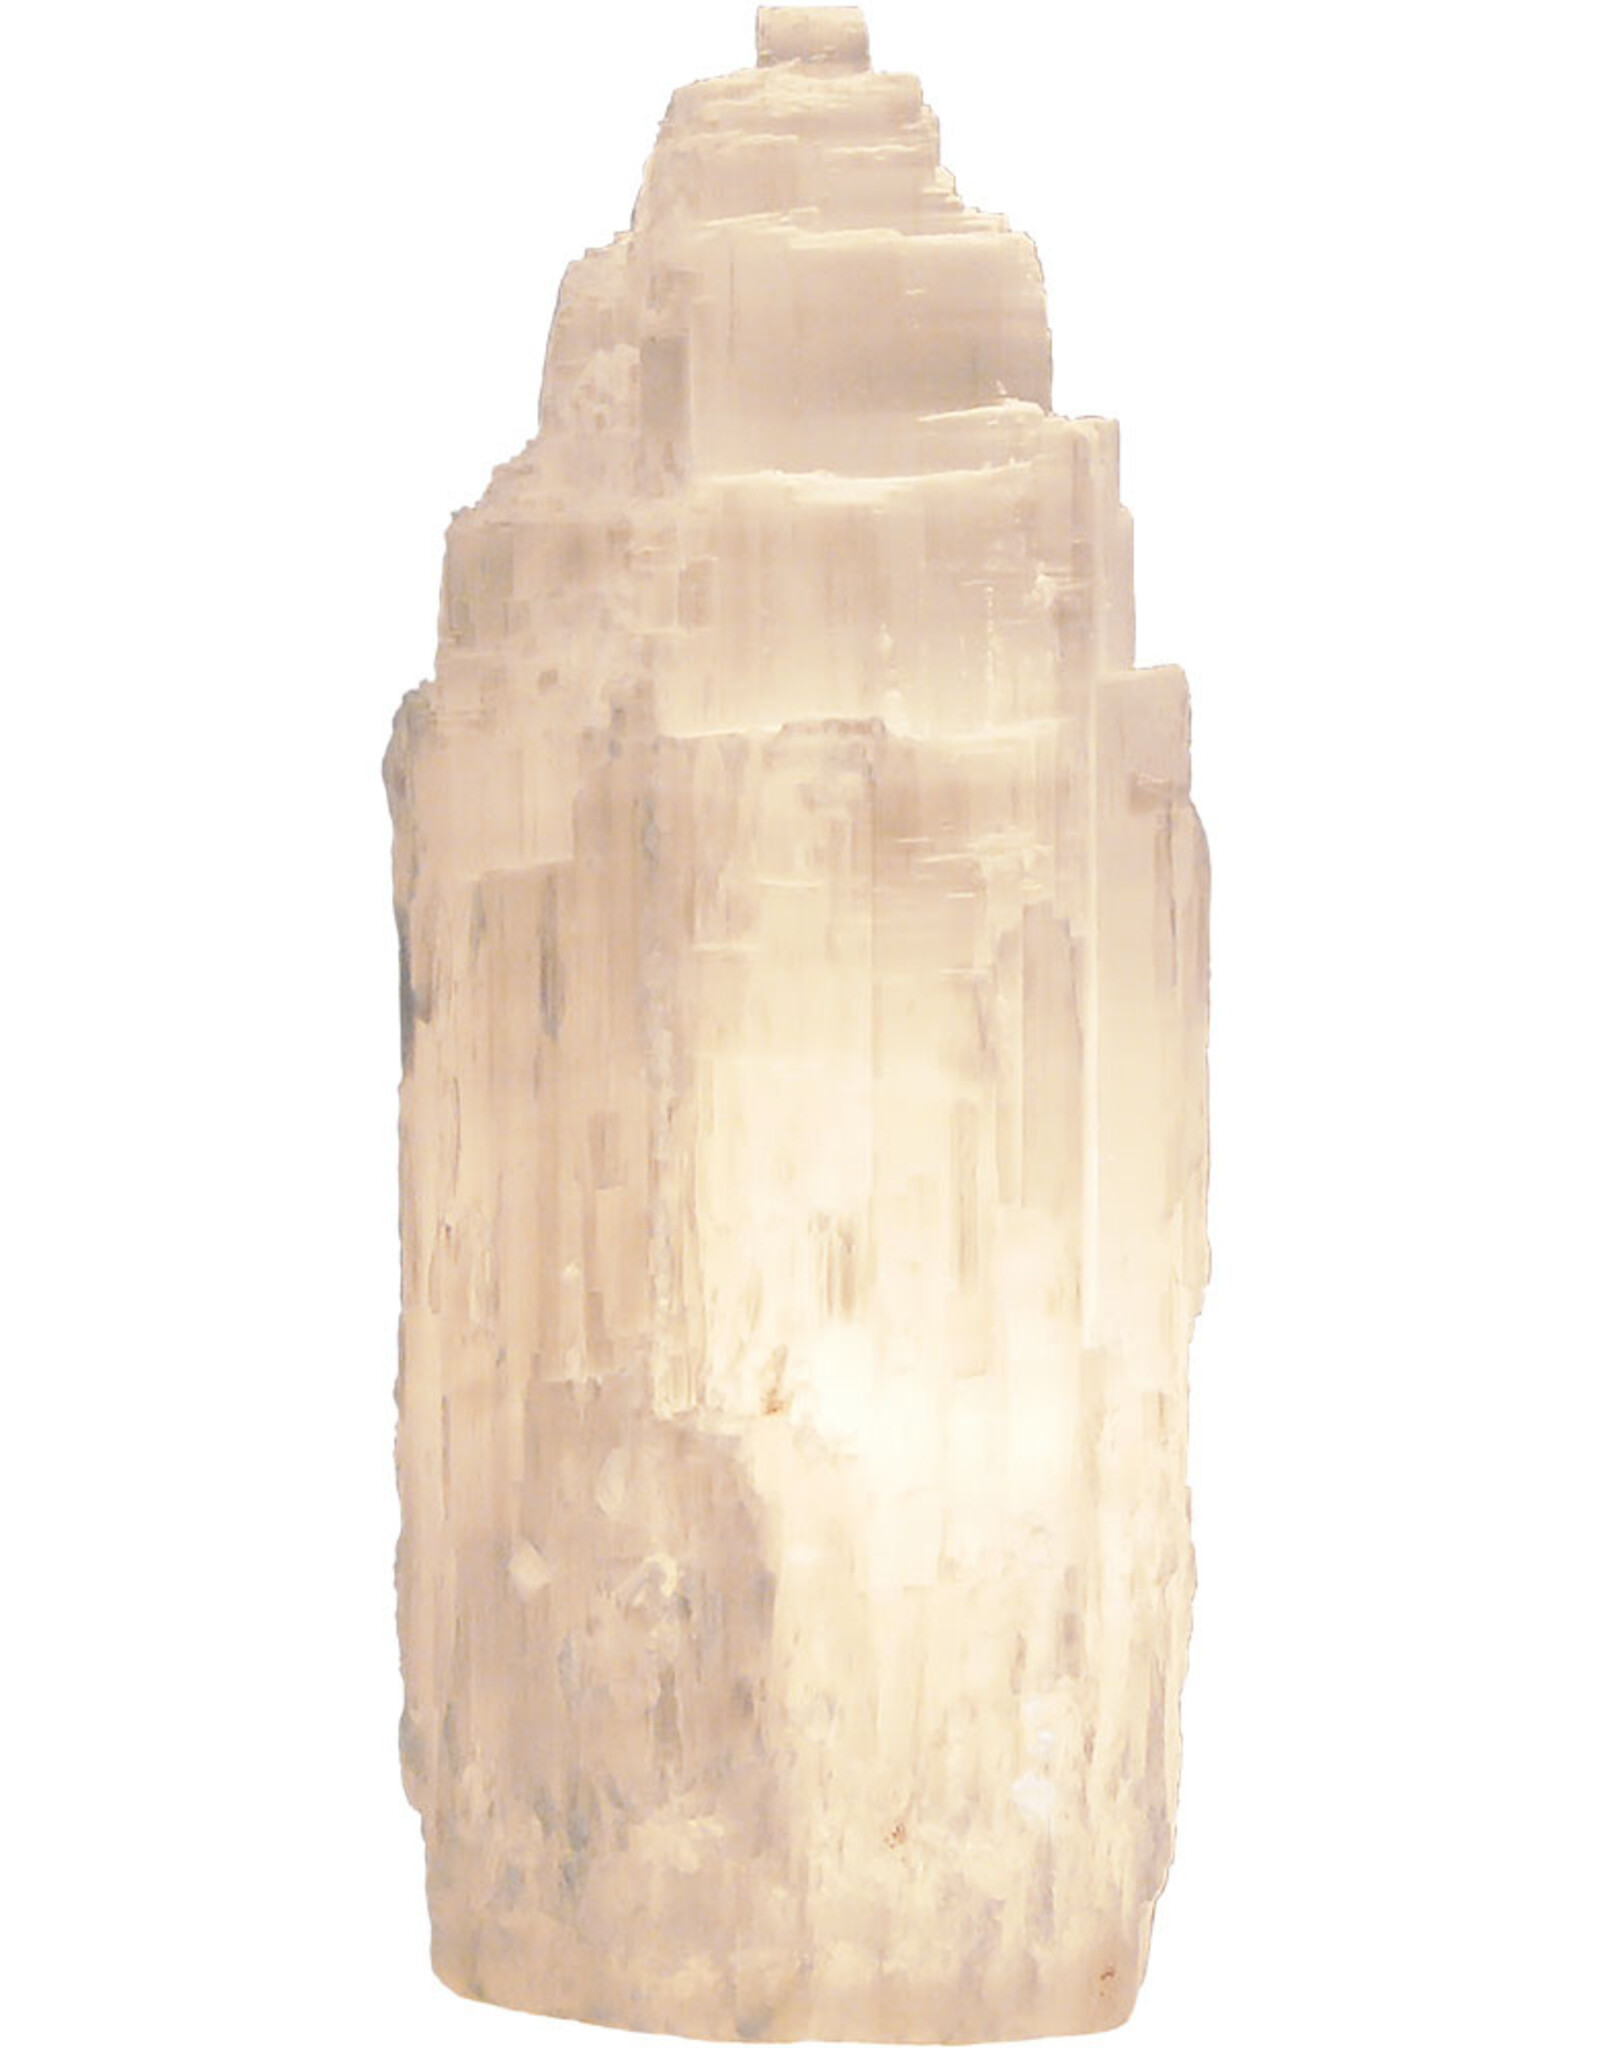 White Selenite Crystal Lamp & Light - Small - 6"